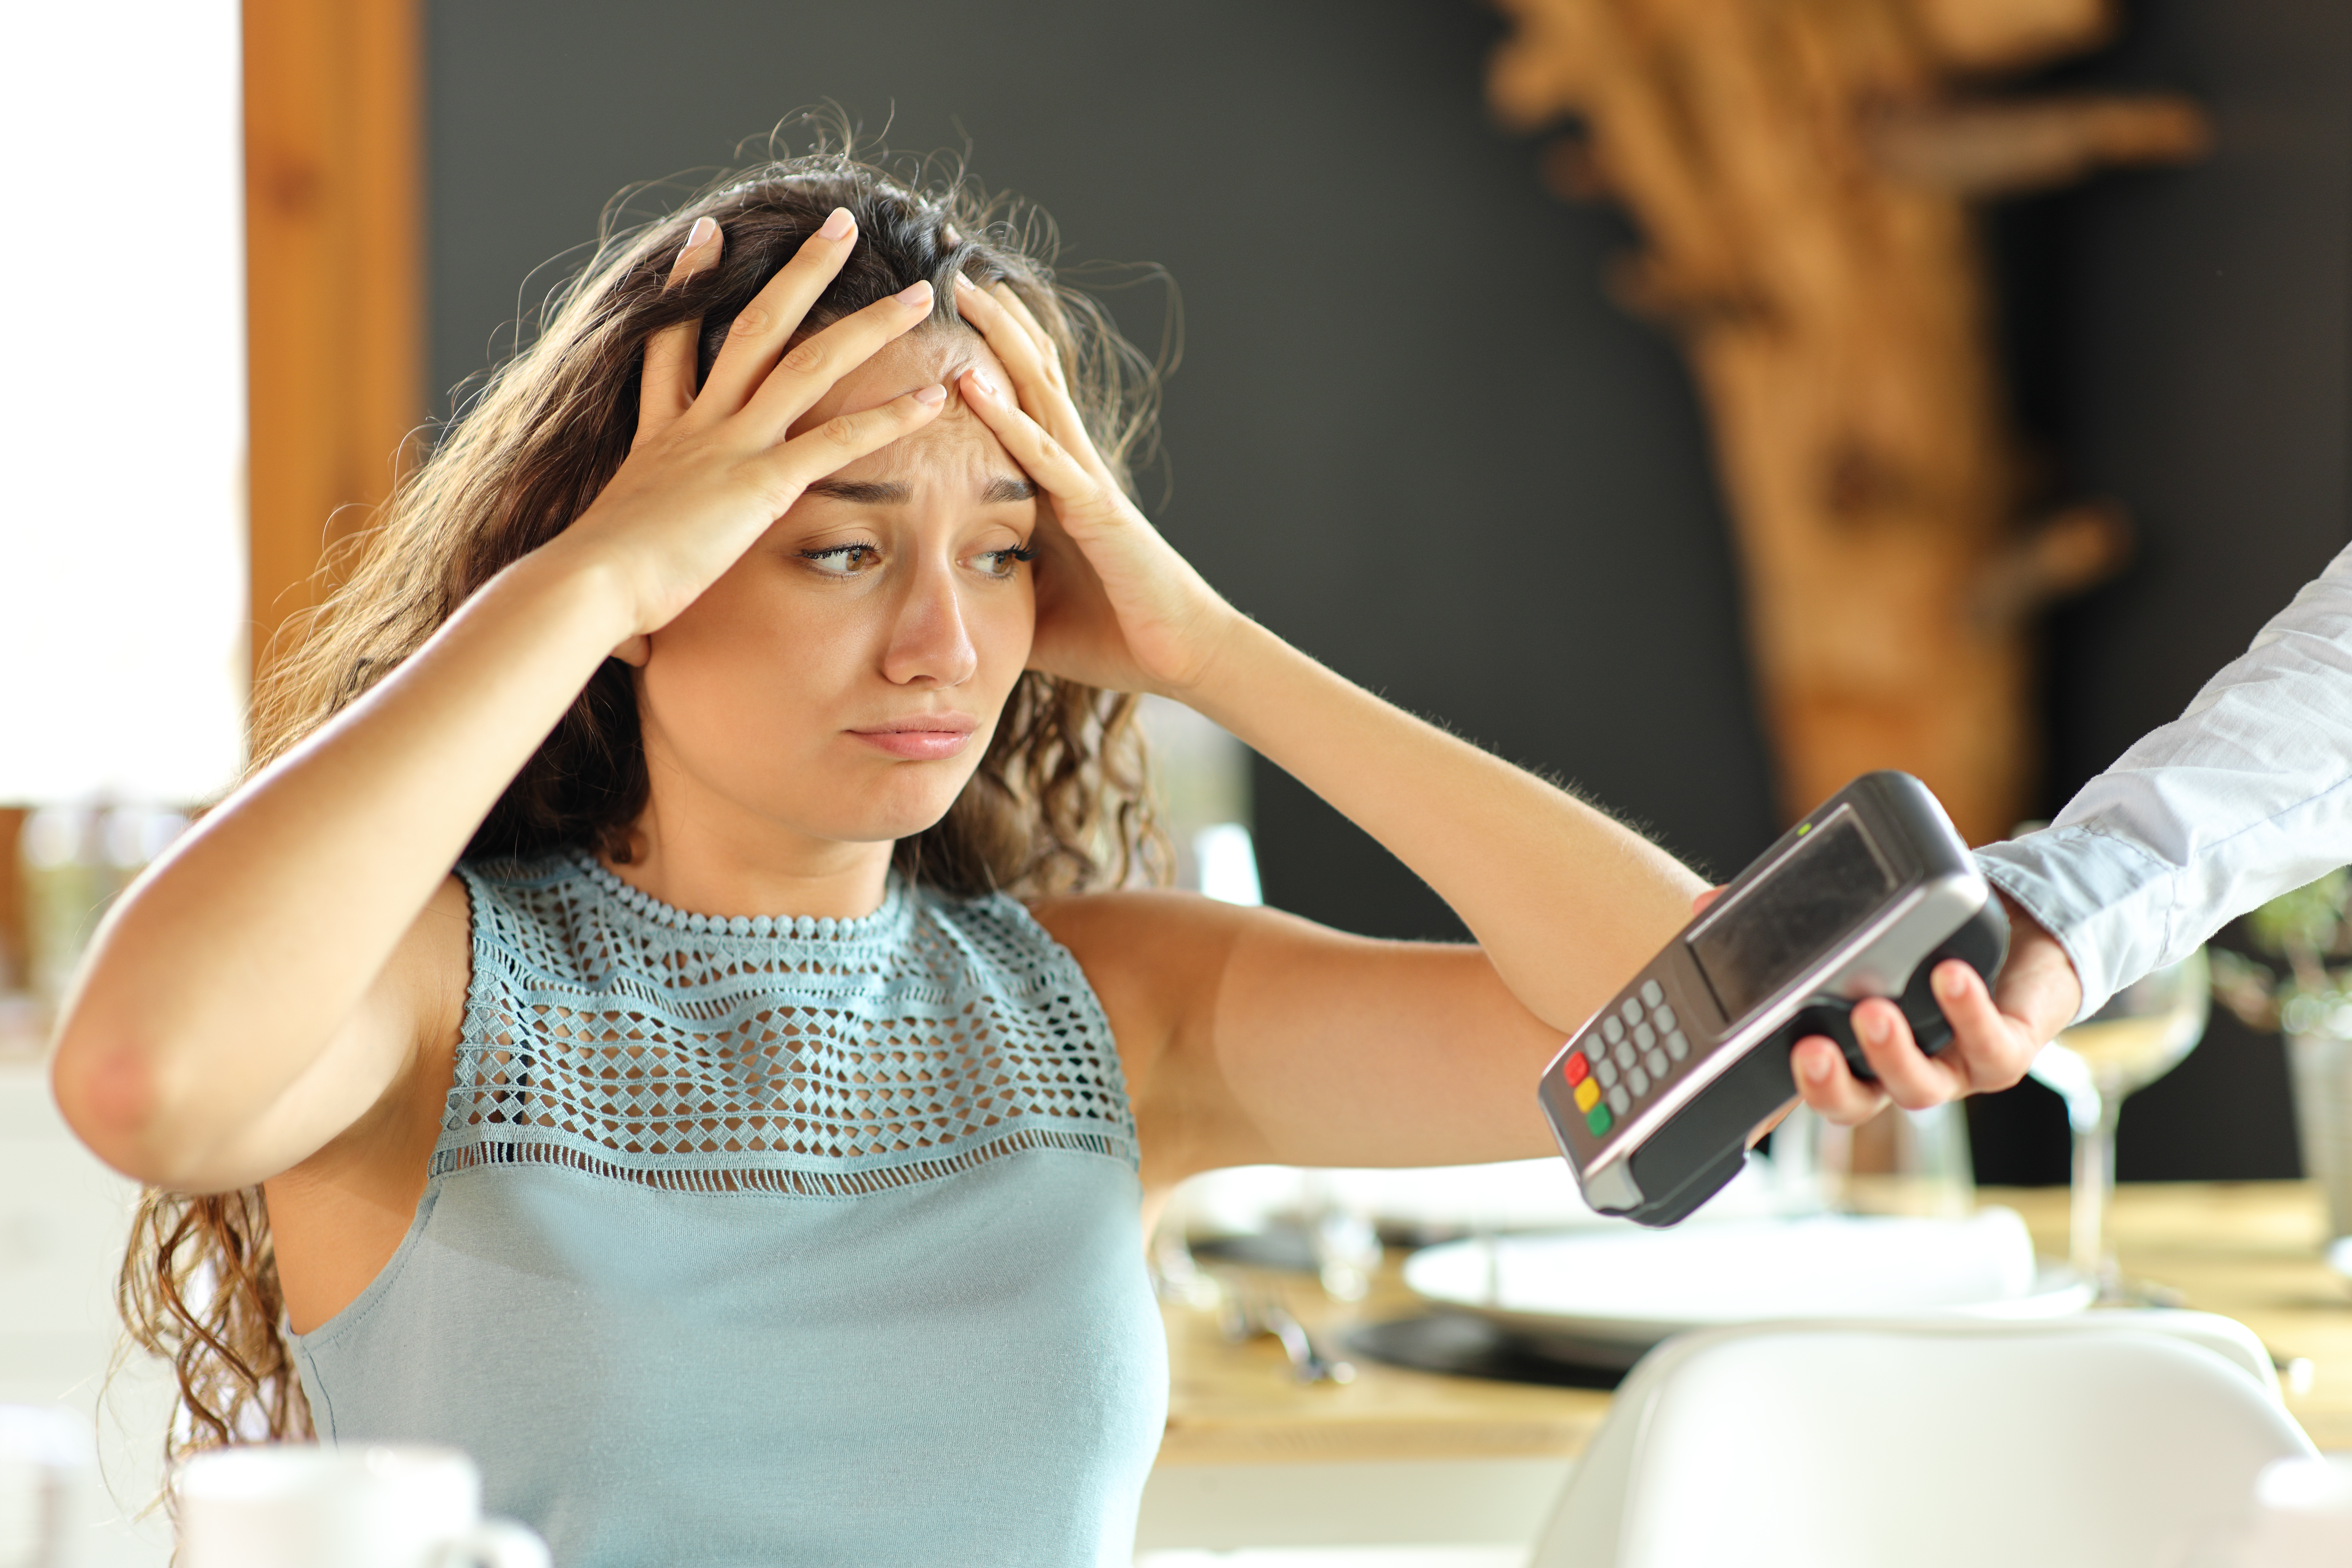 Una mujer parece desesperada mientras le entregan una máquina de tarjetas de crédito. | Foto: Shutterstock